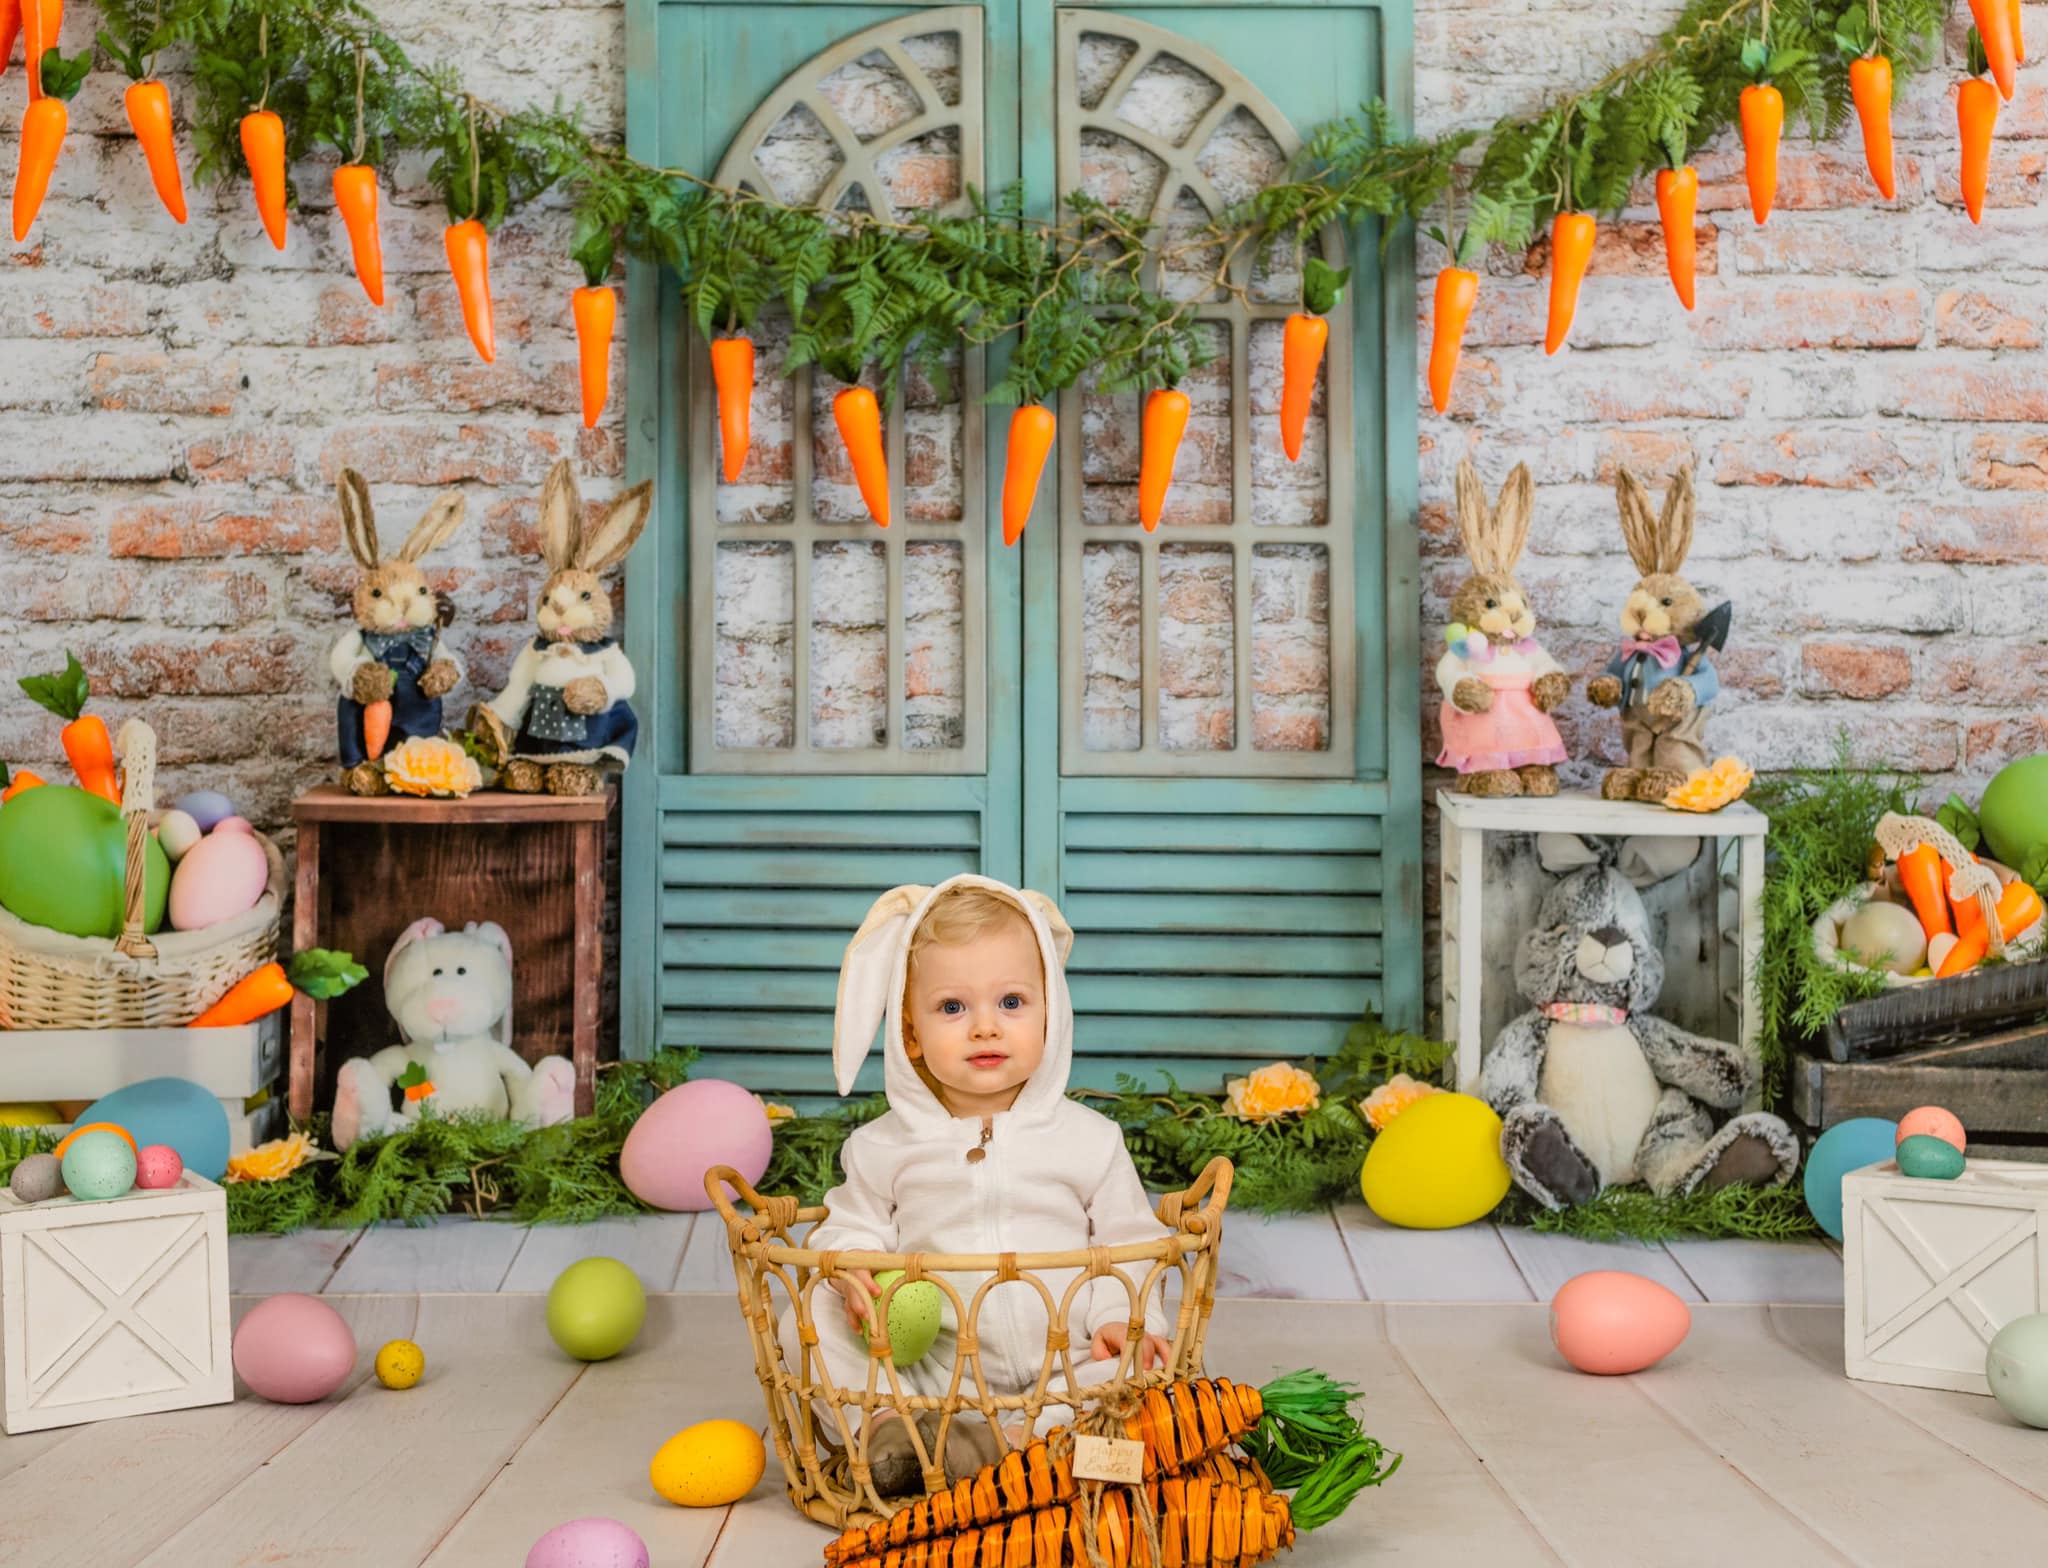 Kate Carotte de toile de fond de lapin de Pâques conçue par Emetselch